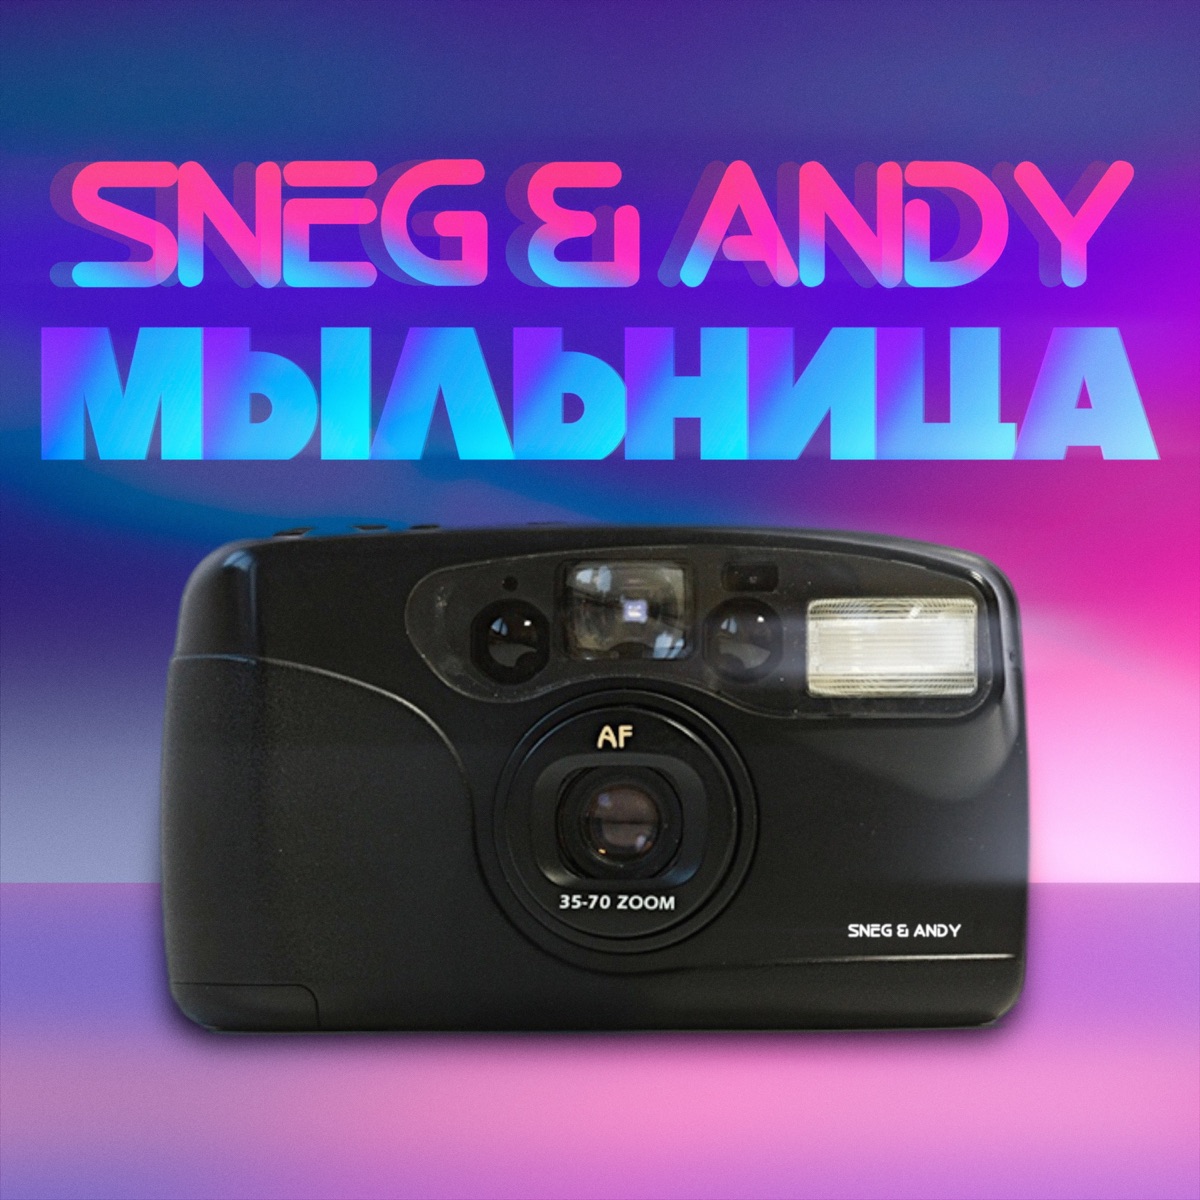 Мыльница - Single - Album by Sneg & Andy - Apple Music